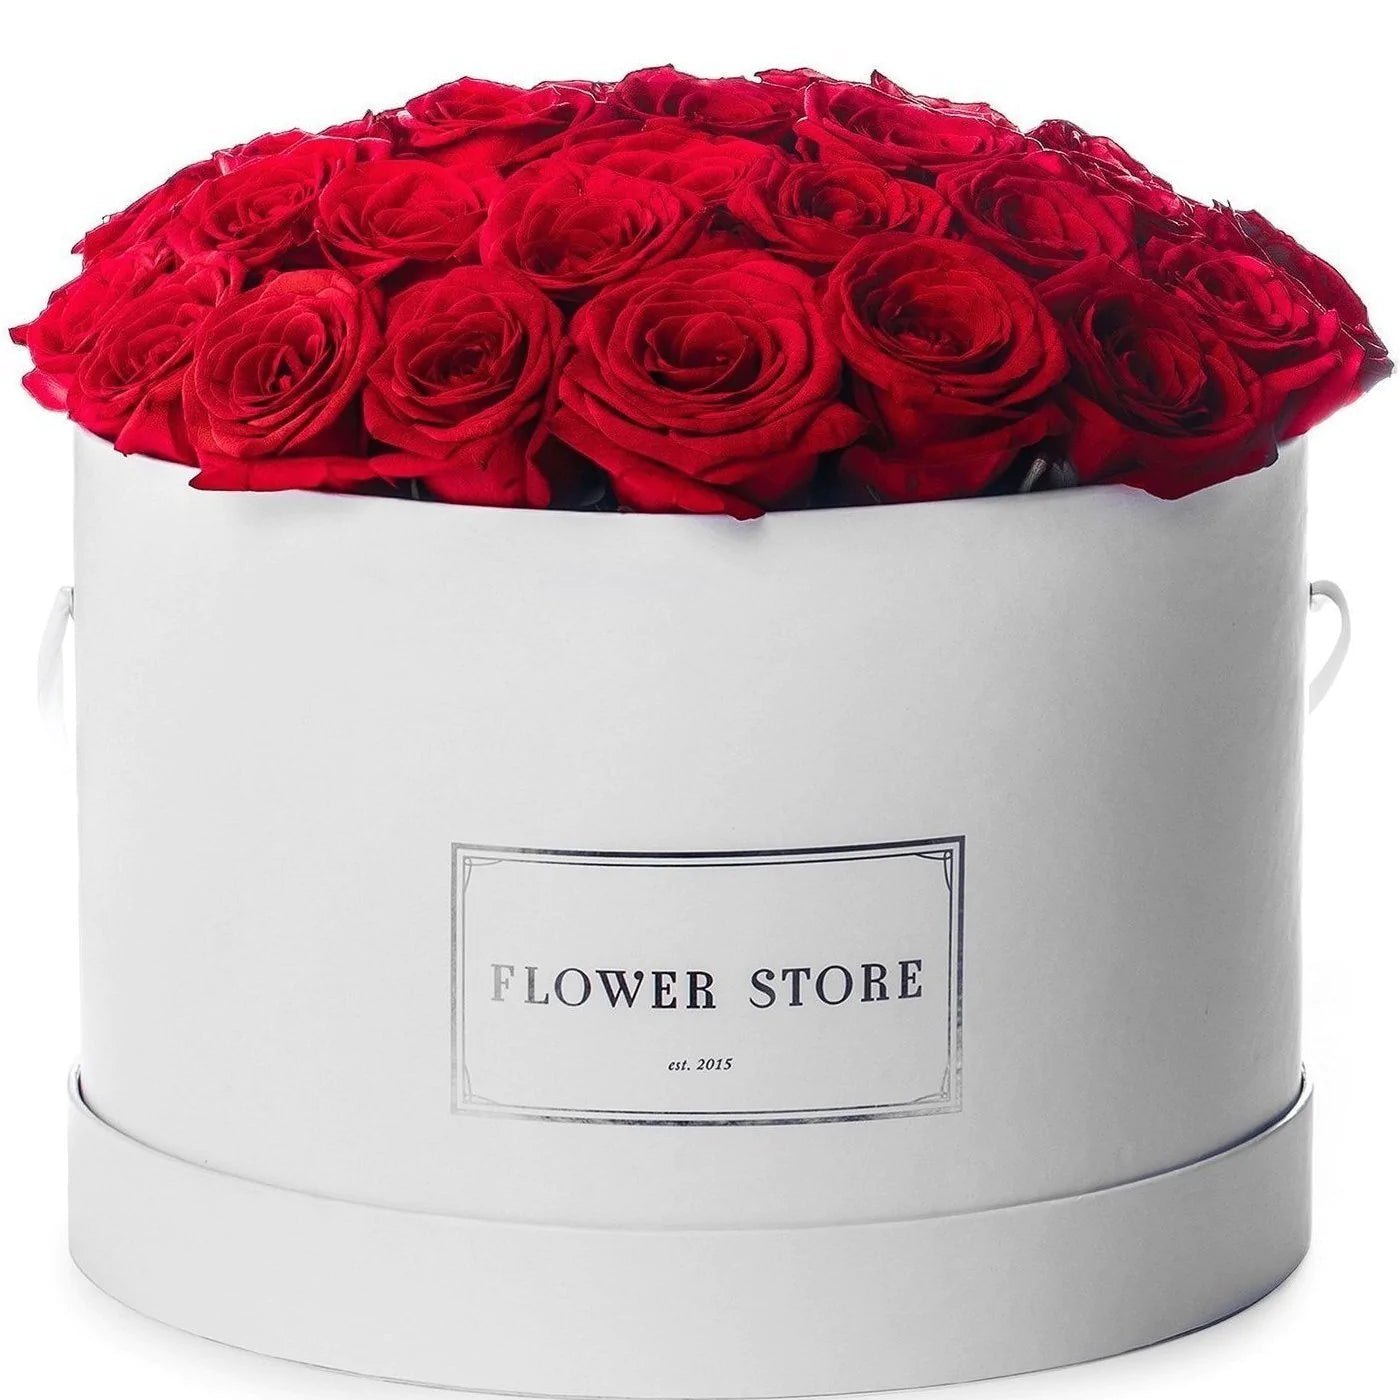 Urodzinowy box Biały grande flowerbox czerwone róże - kwiaty żywe